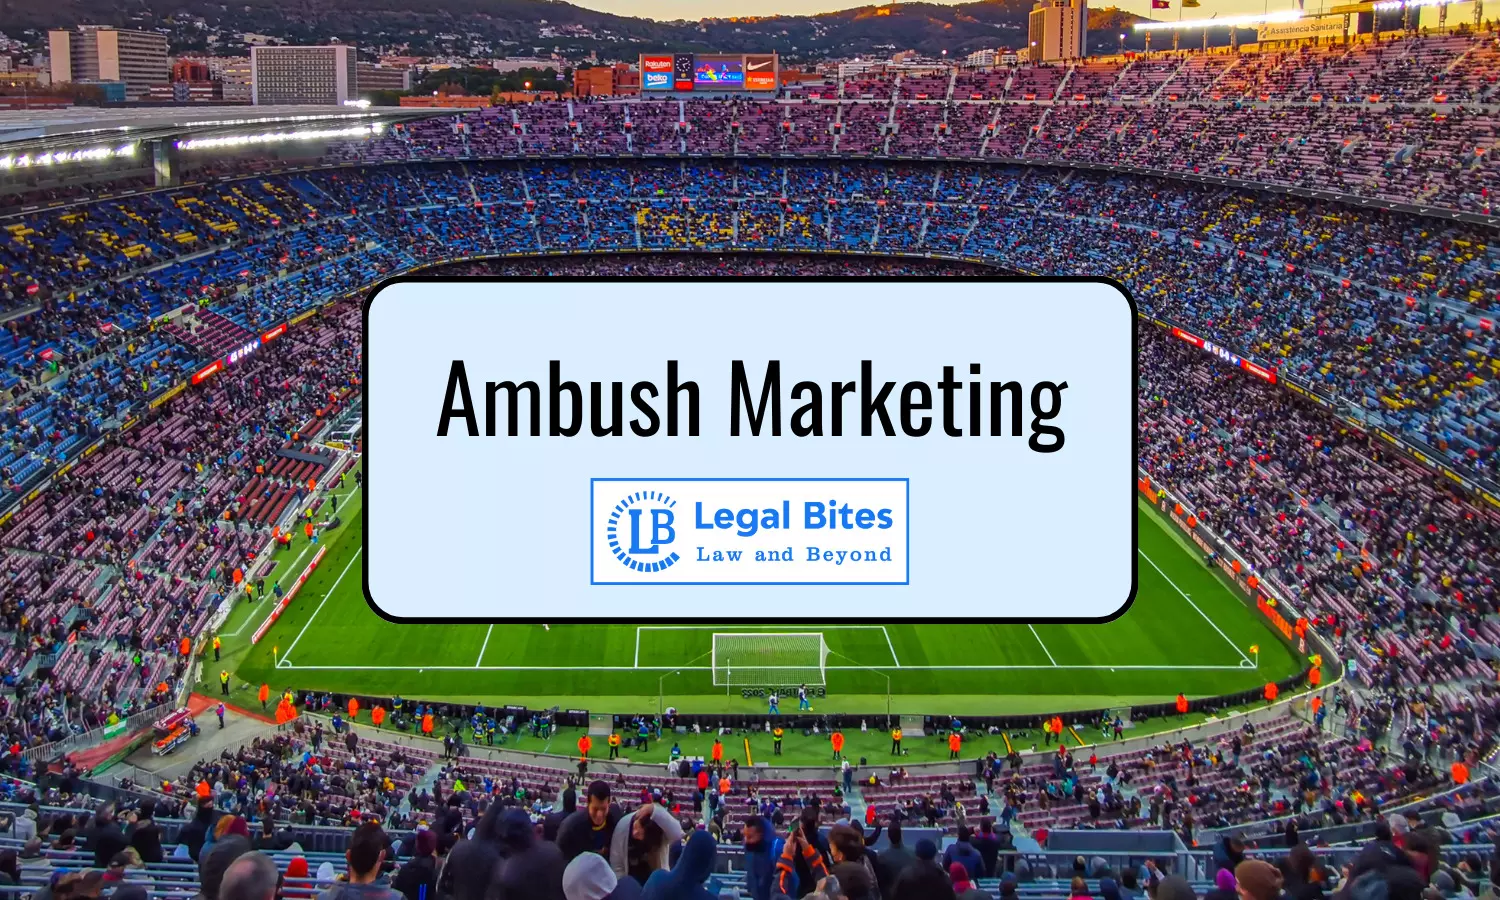 Sports and Ambush Marketing - A Strategic Analysis